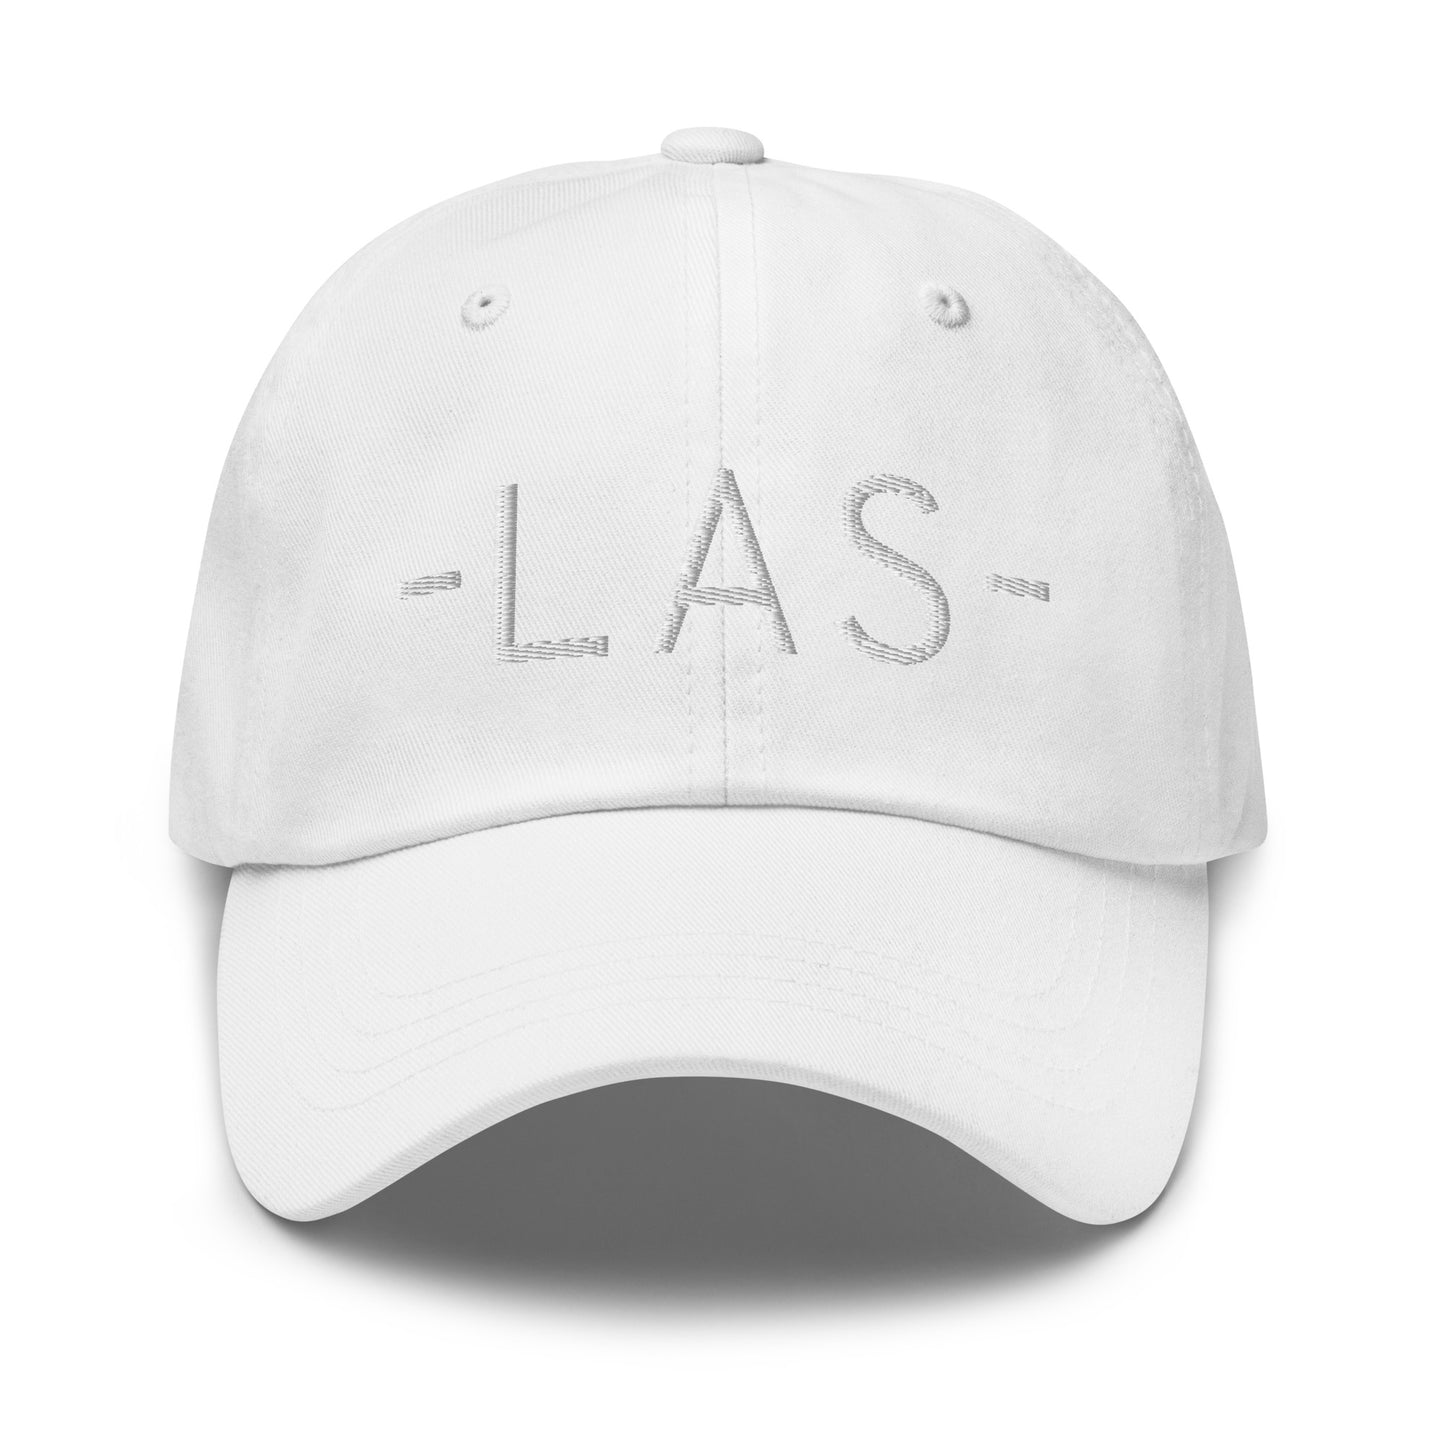 Souvenir Baseball Cap - White • LAS Las Vegas • YHM Designs - Image 29